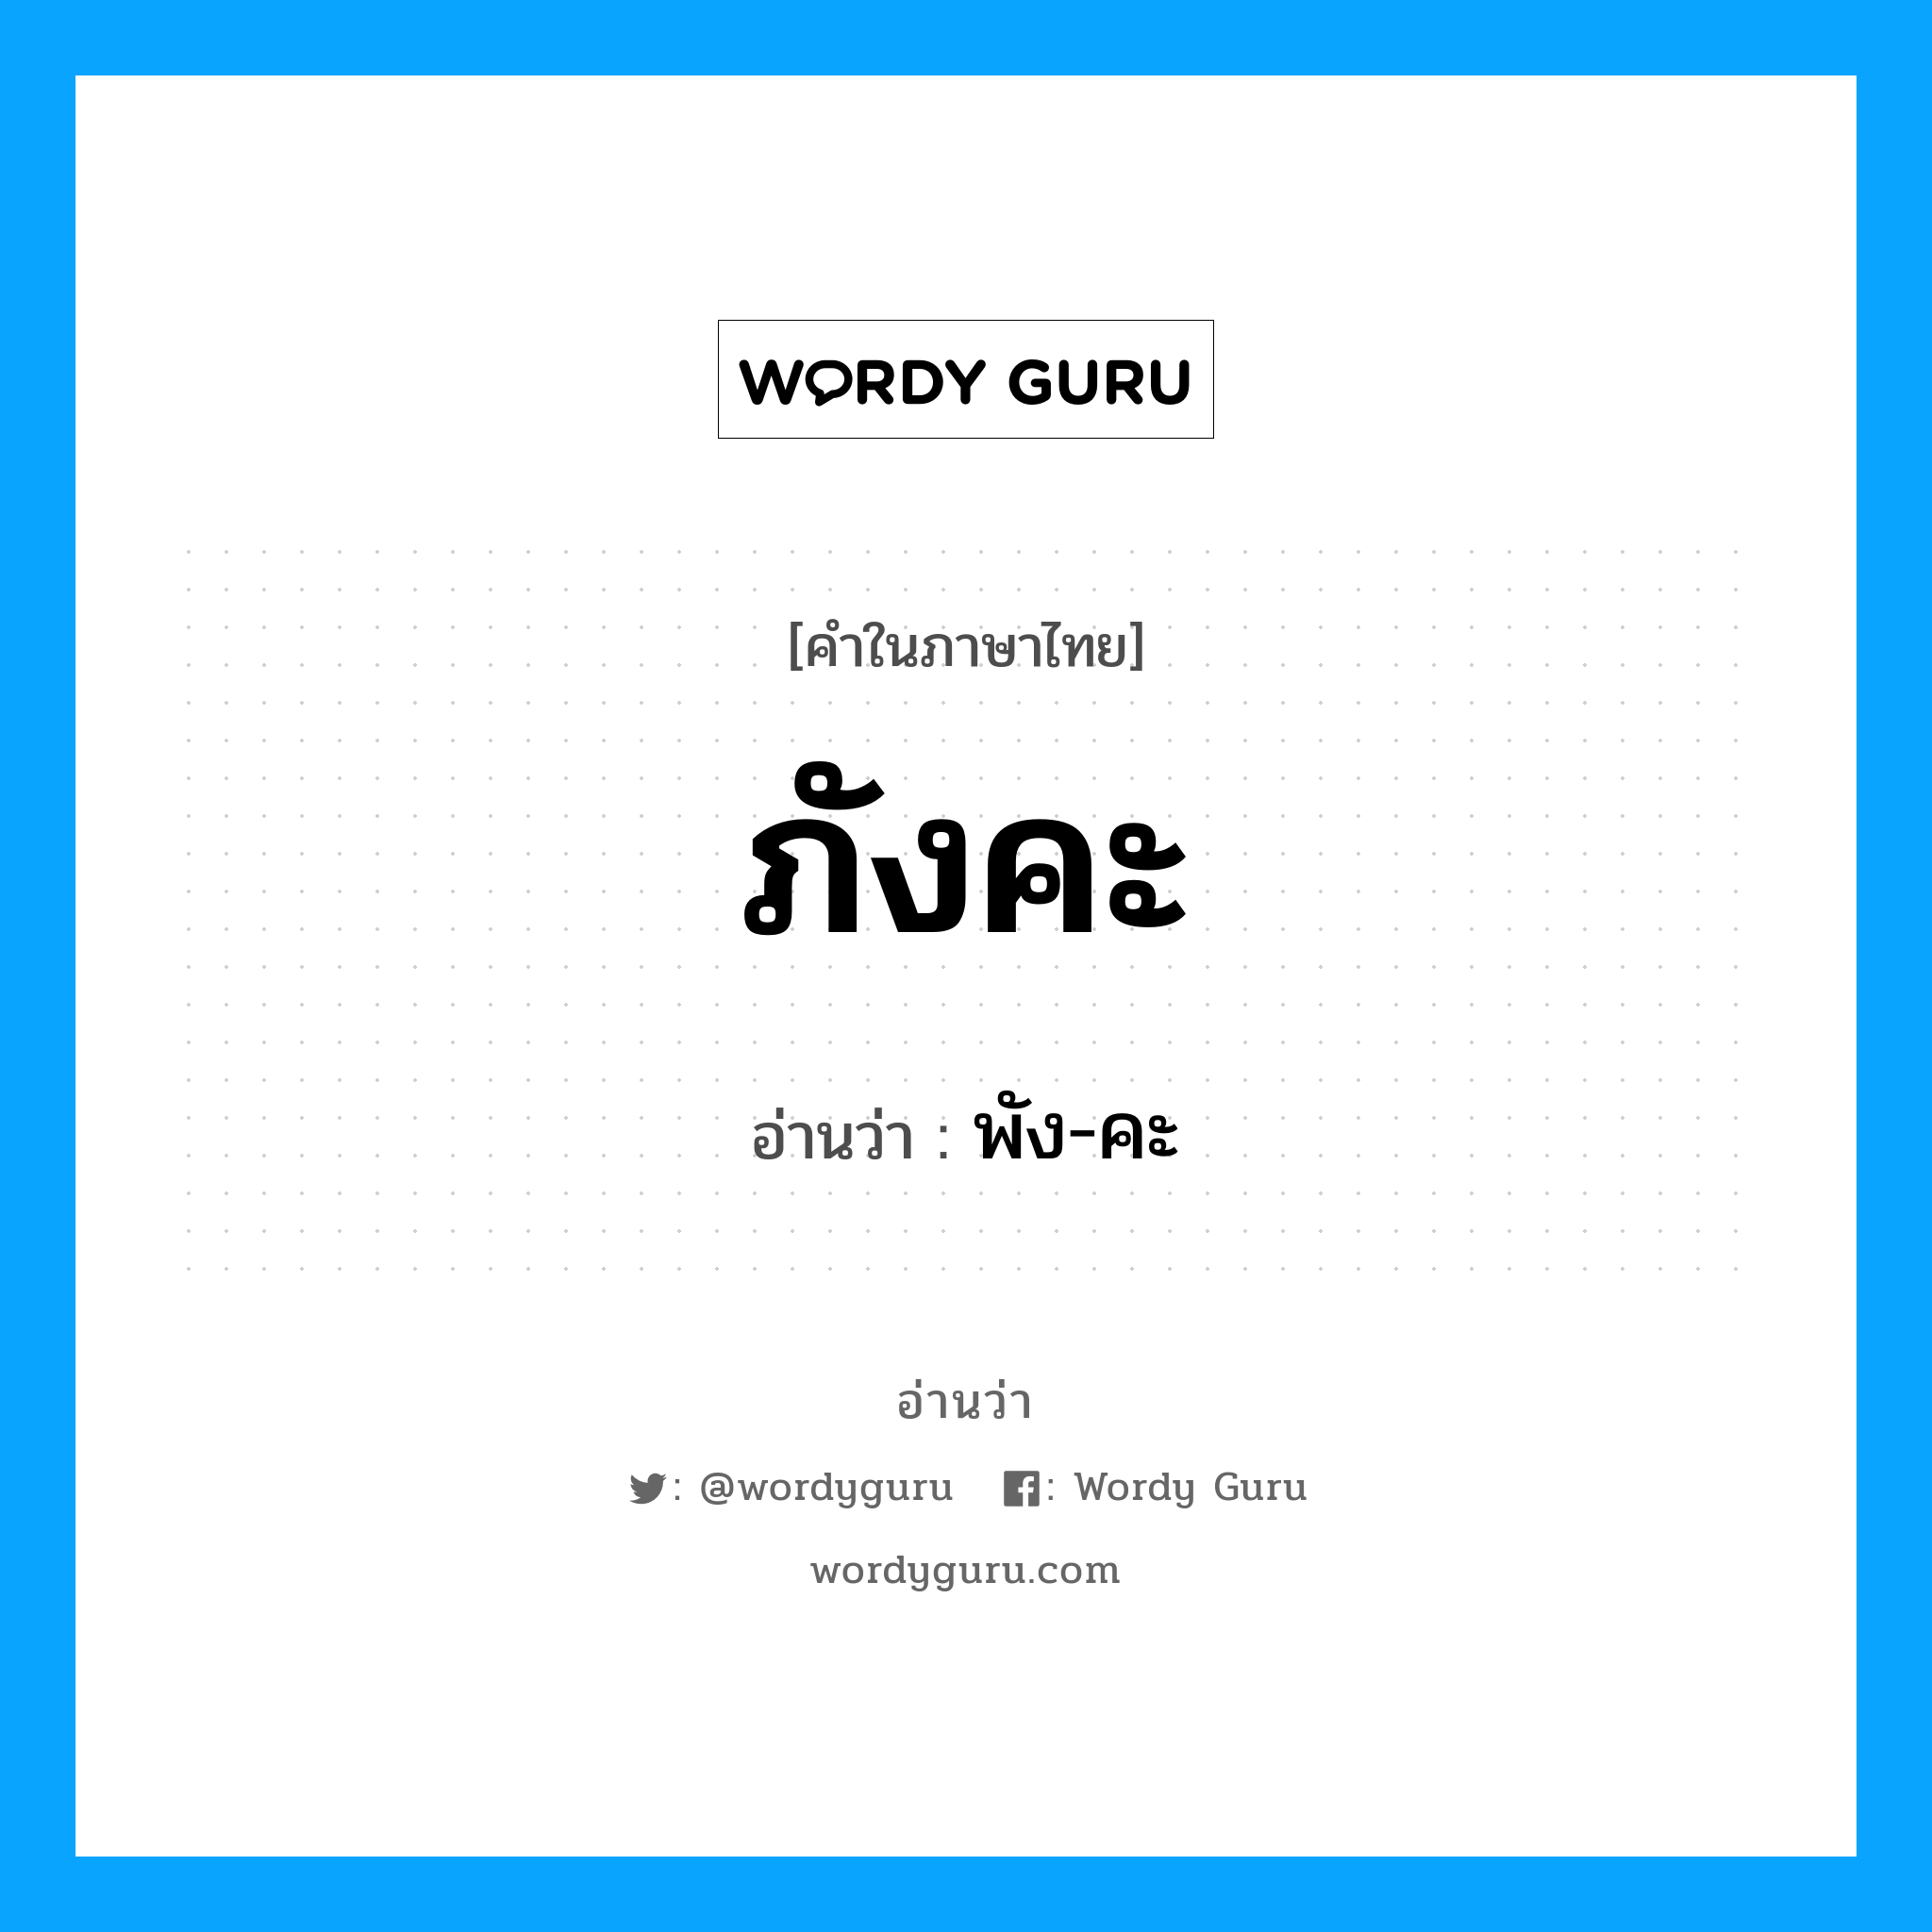 พัง-คะ เป็นคำอ่านของคำไหน?, คำในภาษาไทย พัง-คะ อ่านว่า ภังคะ